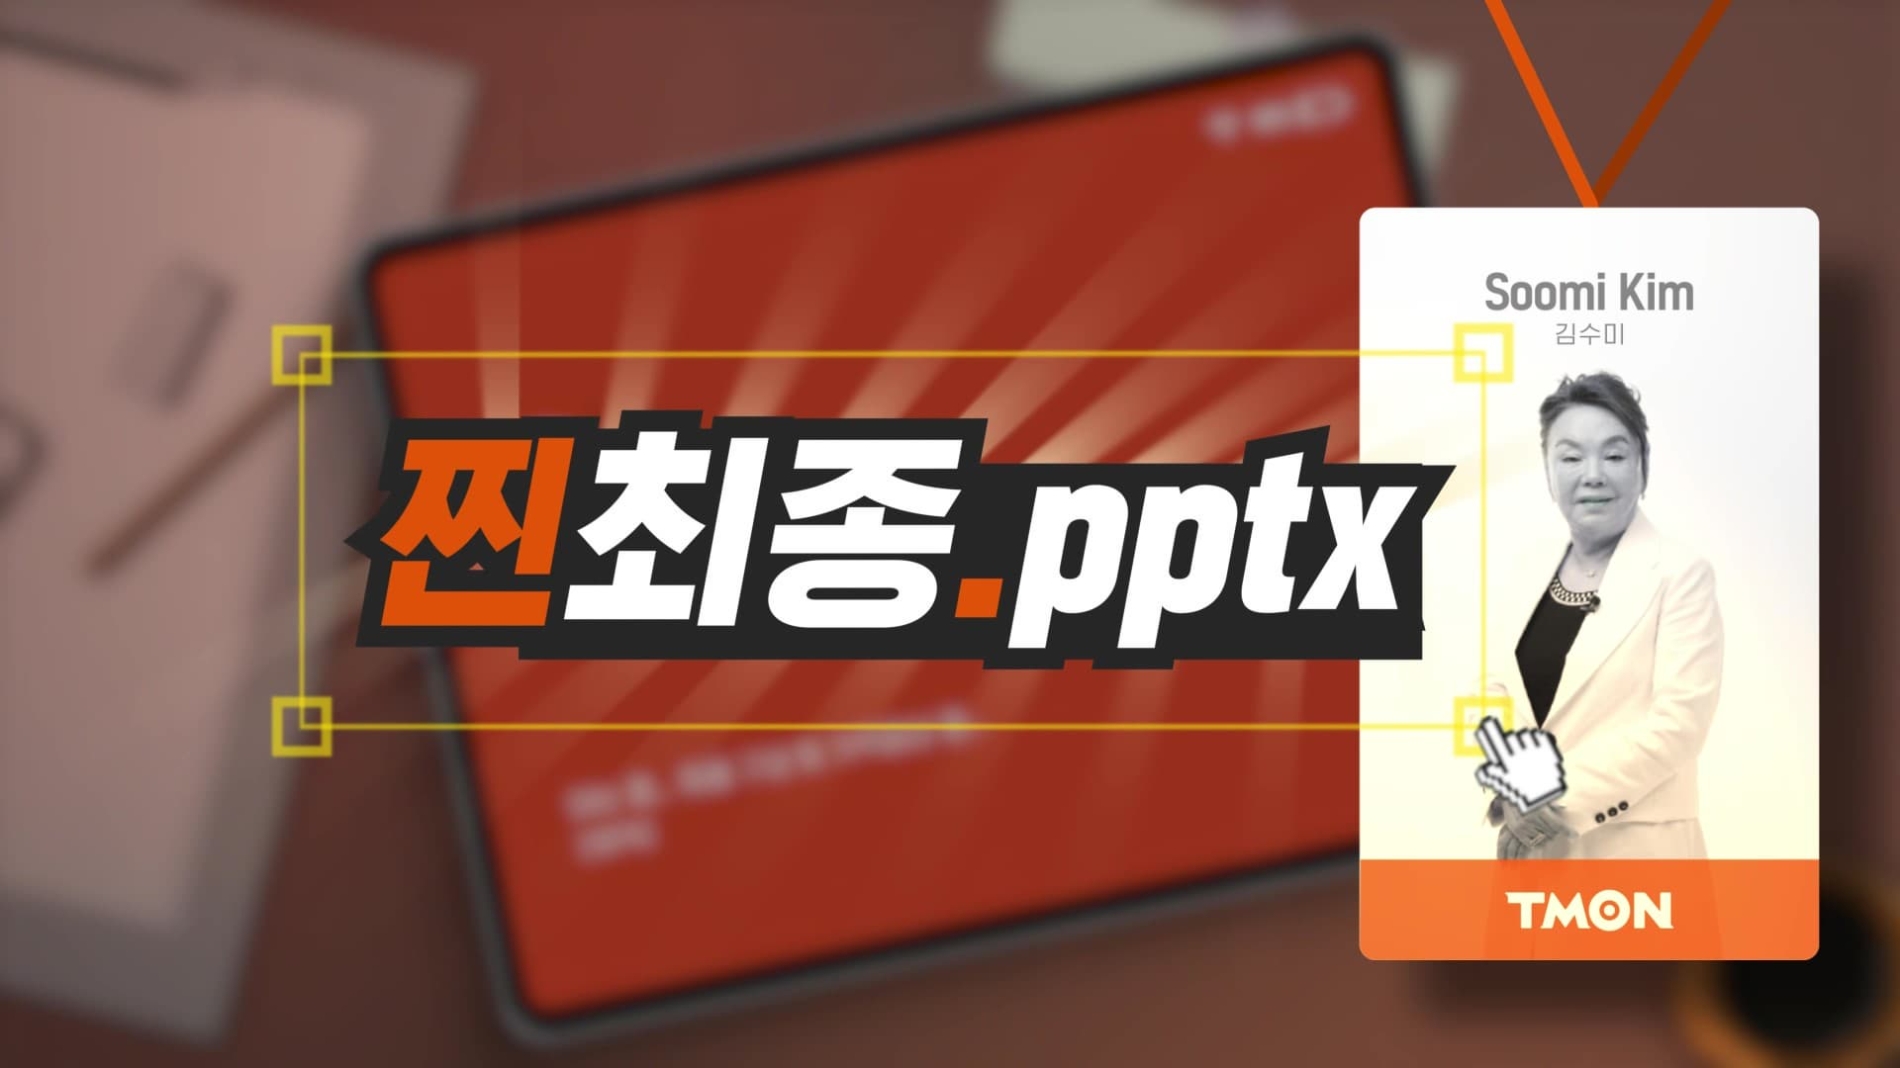 티몬 웹예능 ‘찐최종.pptx’ 새로운 에피소드로 바르닭 신메뉴 공개